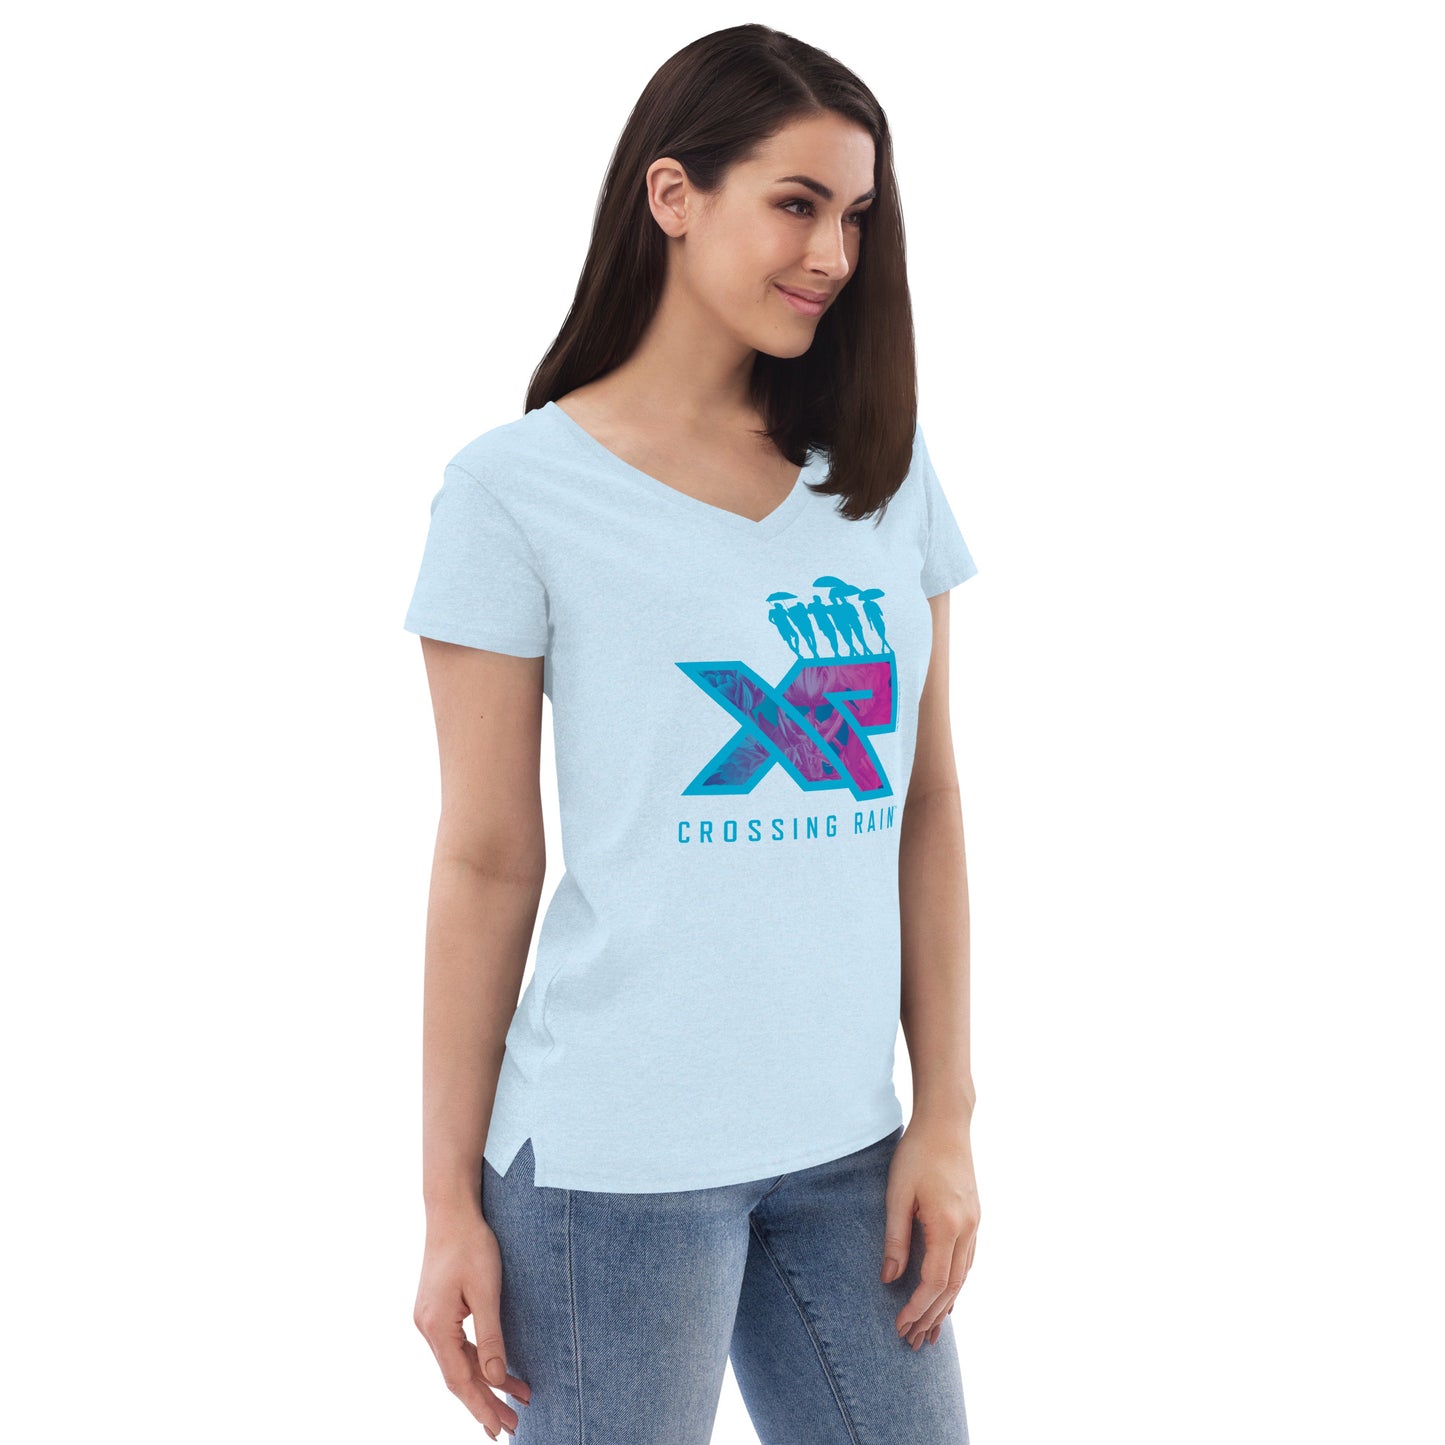 Women’s recycled XR v-neck t-shirt